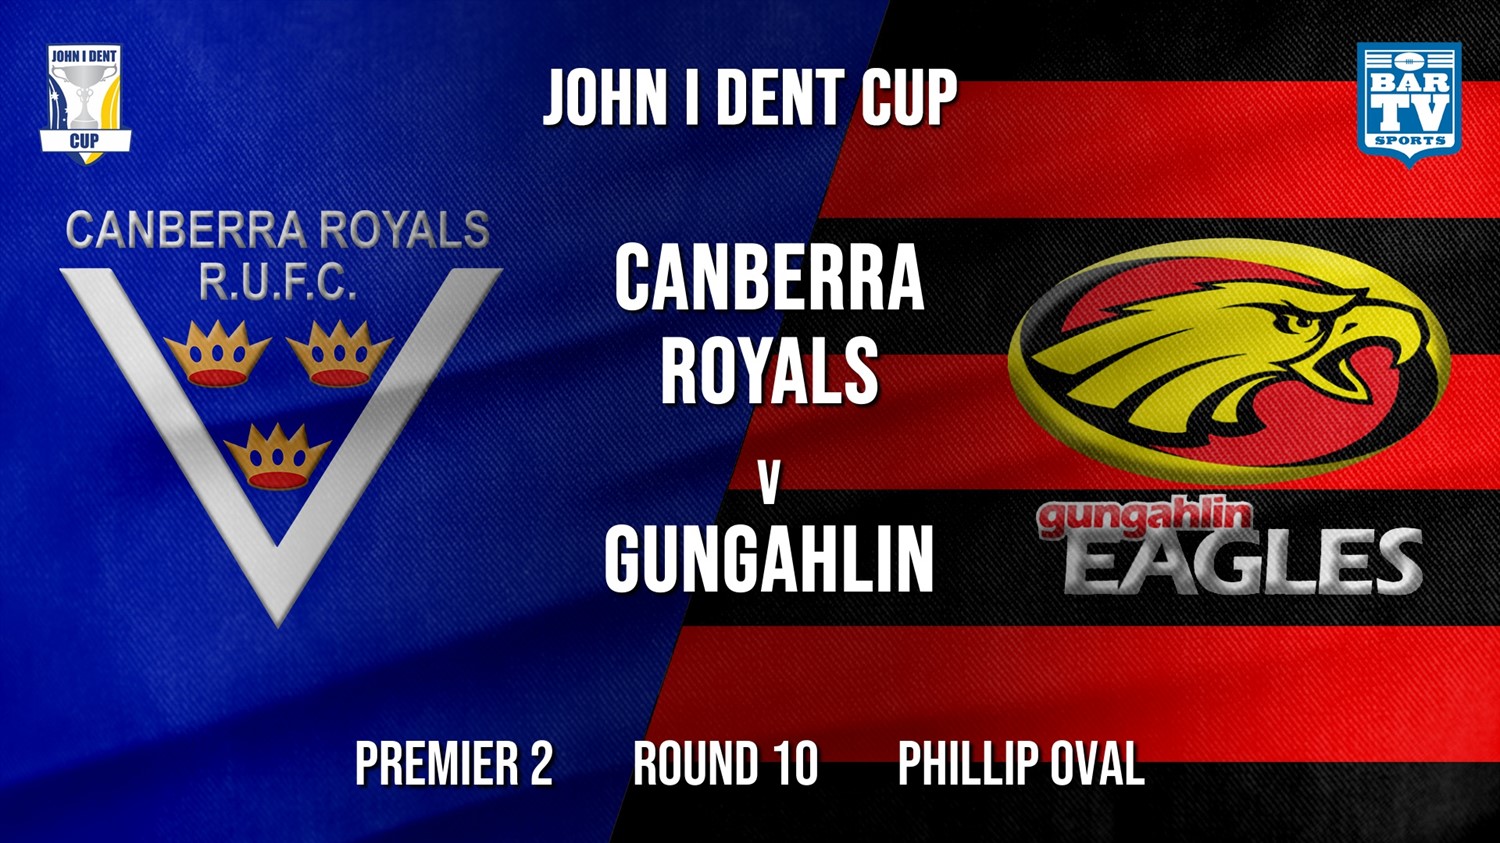 John I Dent Round 10 - Premier 2 - Canberra Royals v Gungahlin Eagles Minigame Slate Image